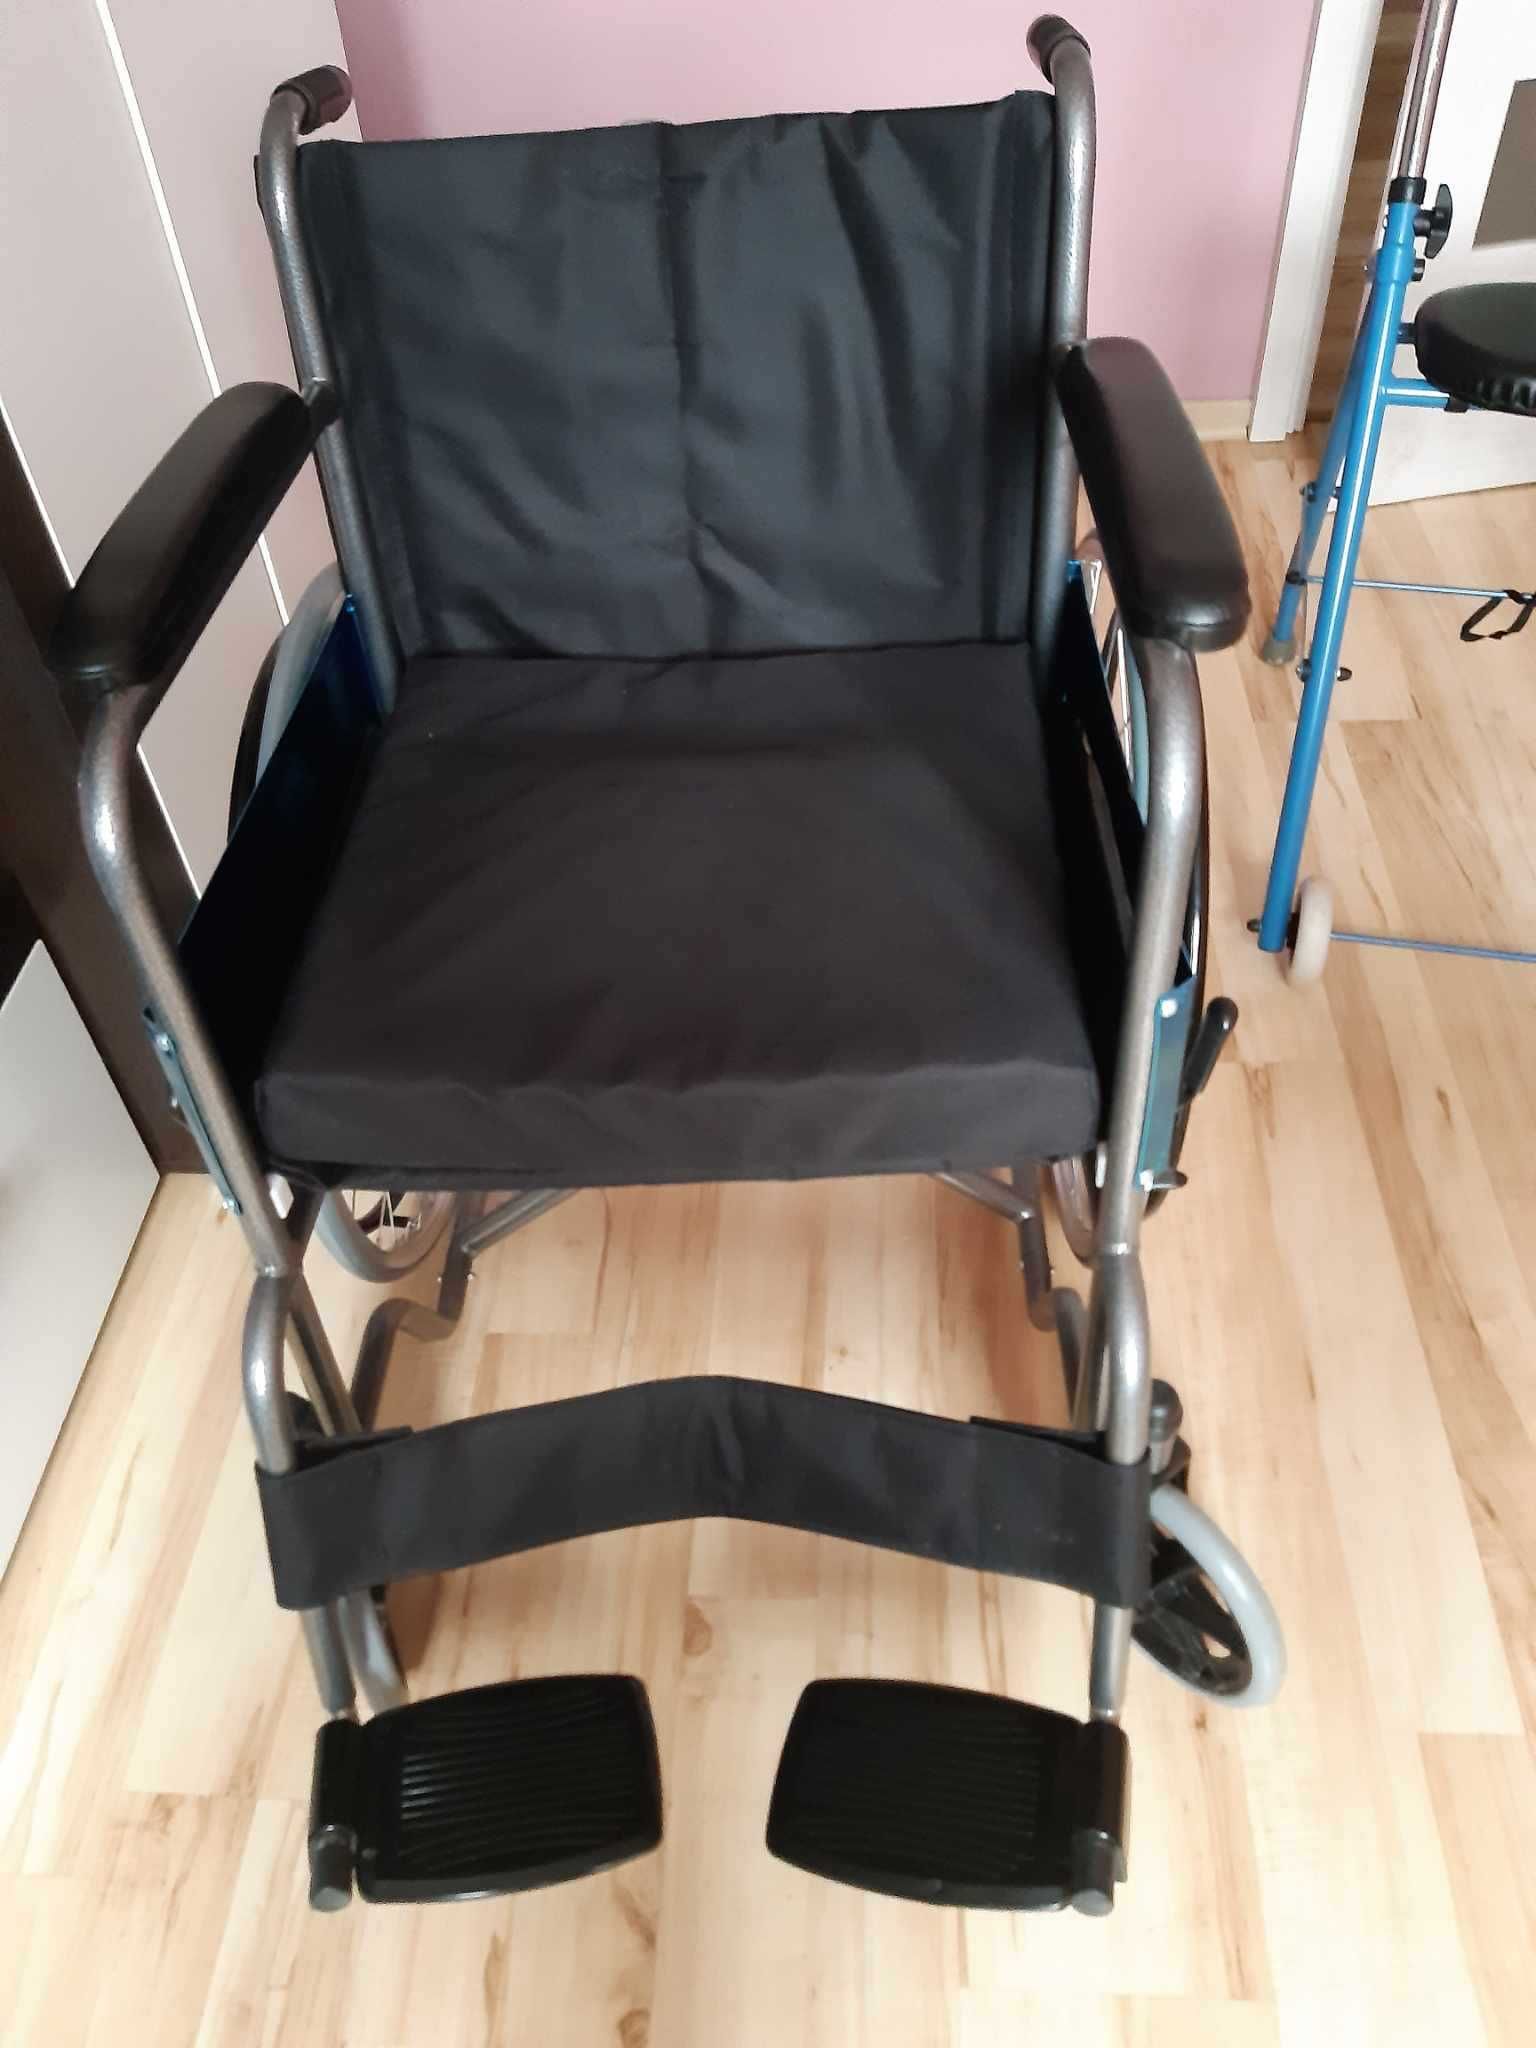 Wózek inwalidzki dla osób niepełnosprawnych + poduszka ortopedyczna